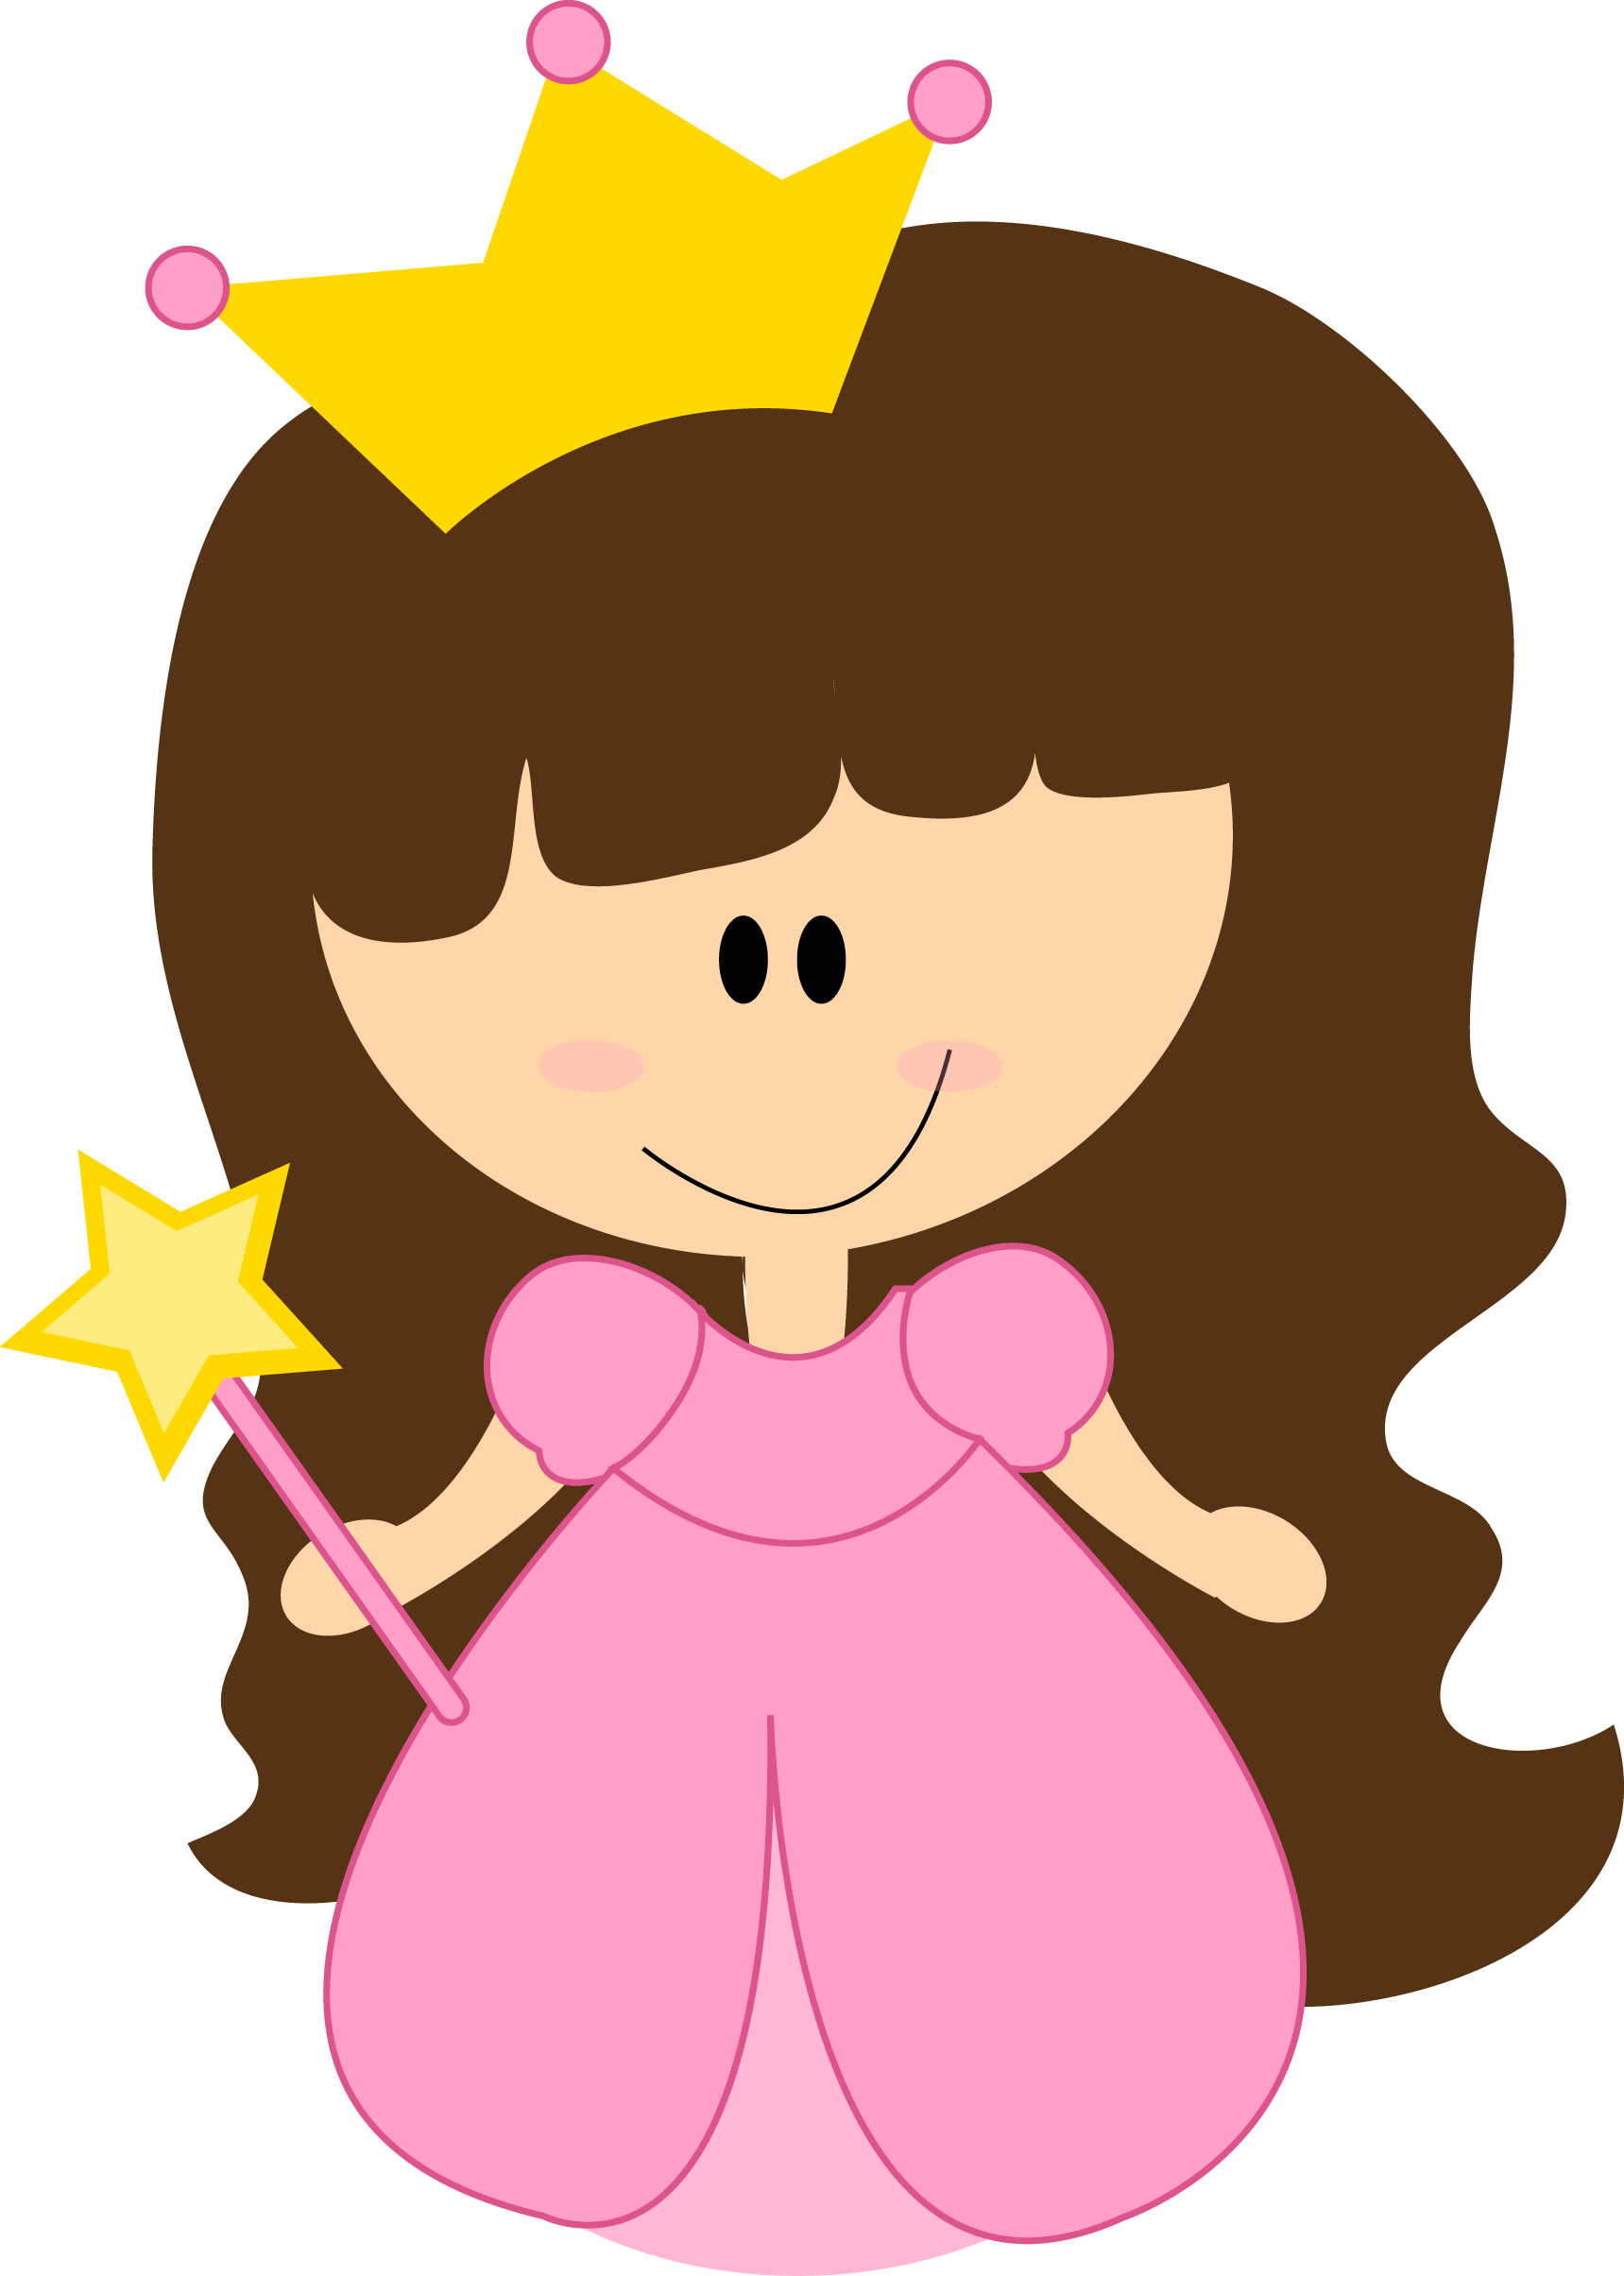 Princess / Fairy - Imagenes De Princesas En Caricatura (1719x2409)